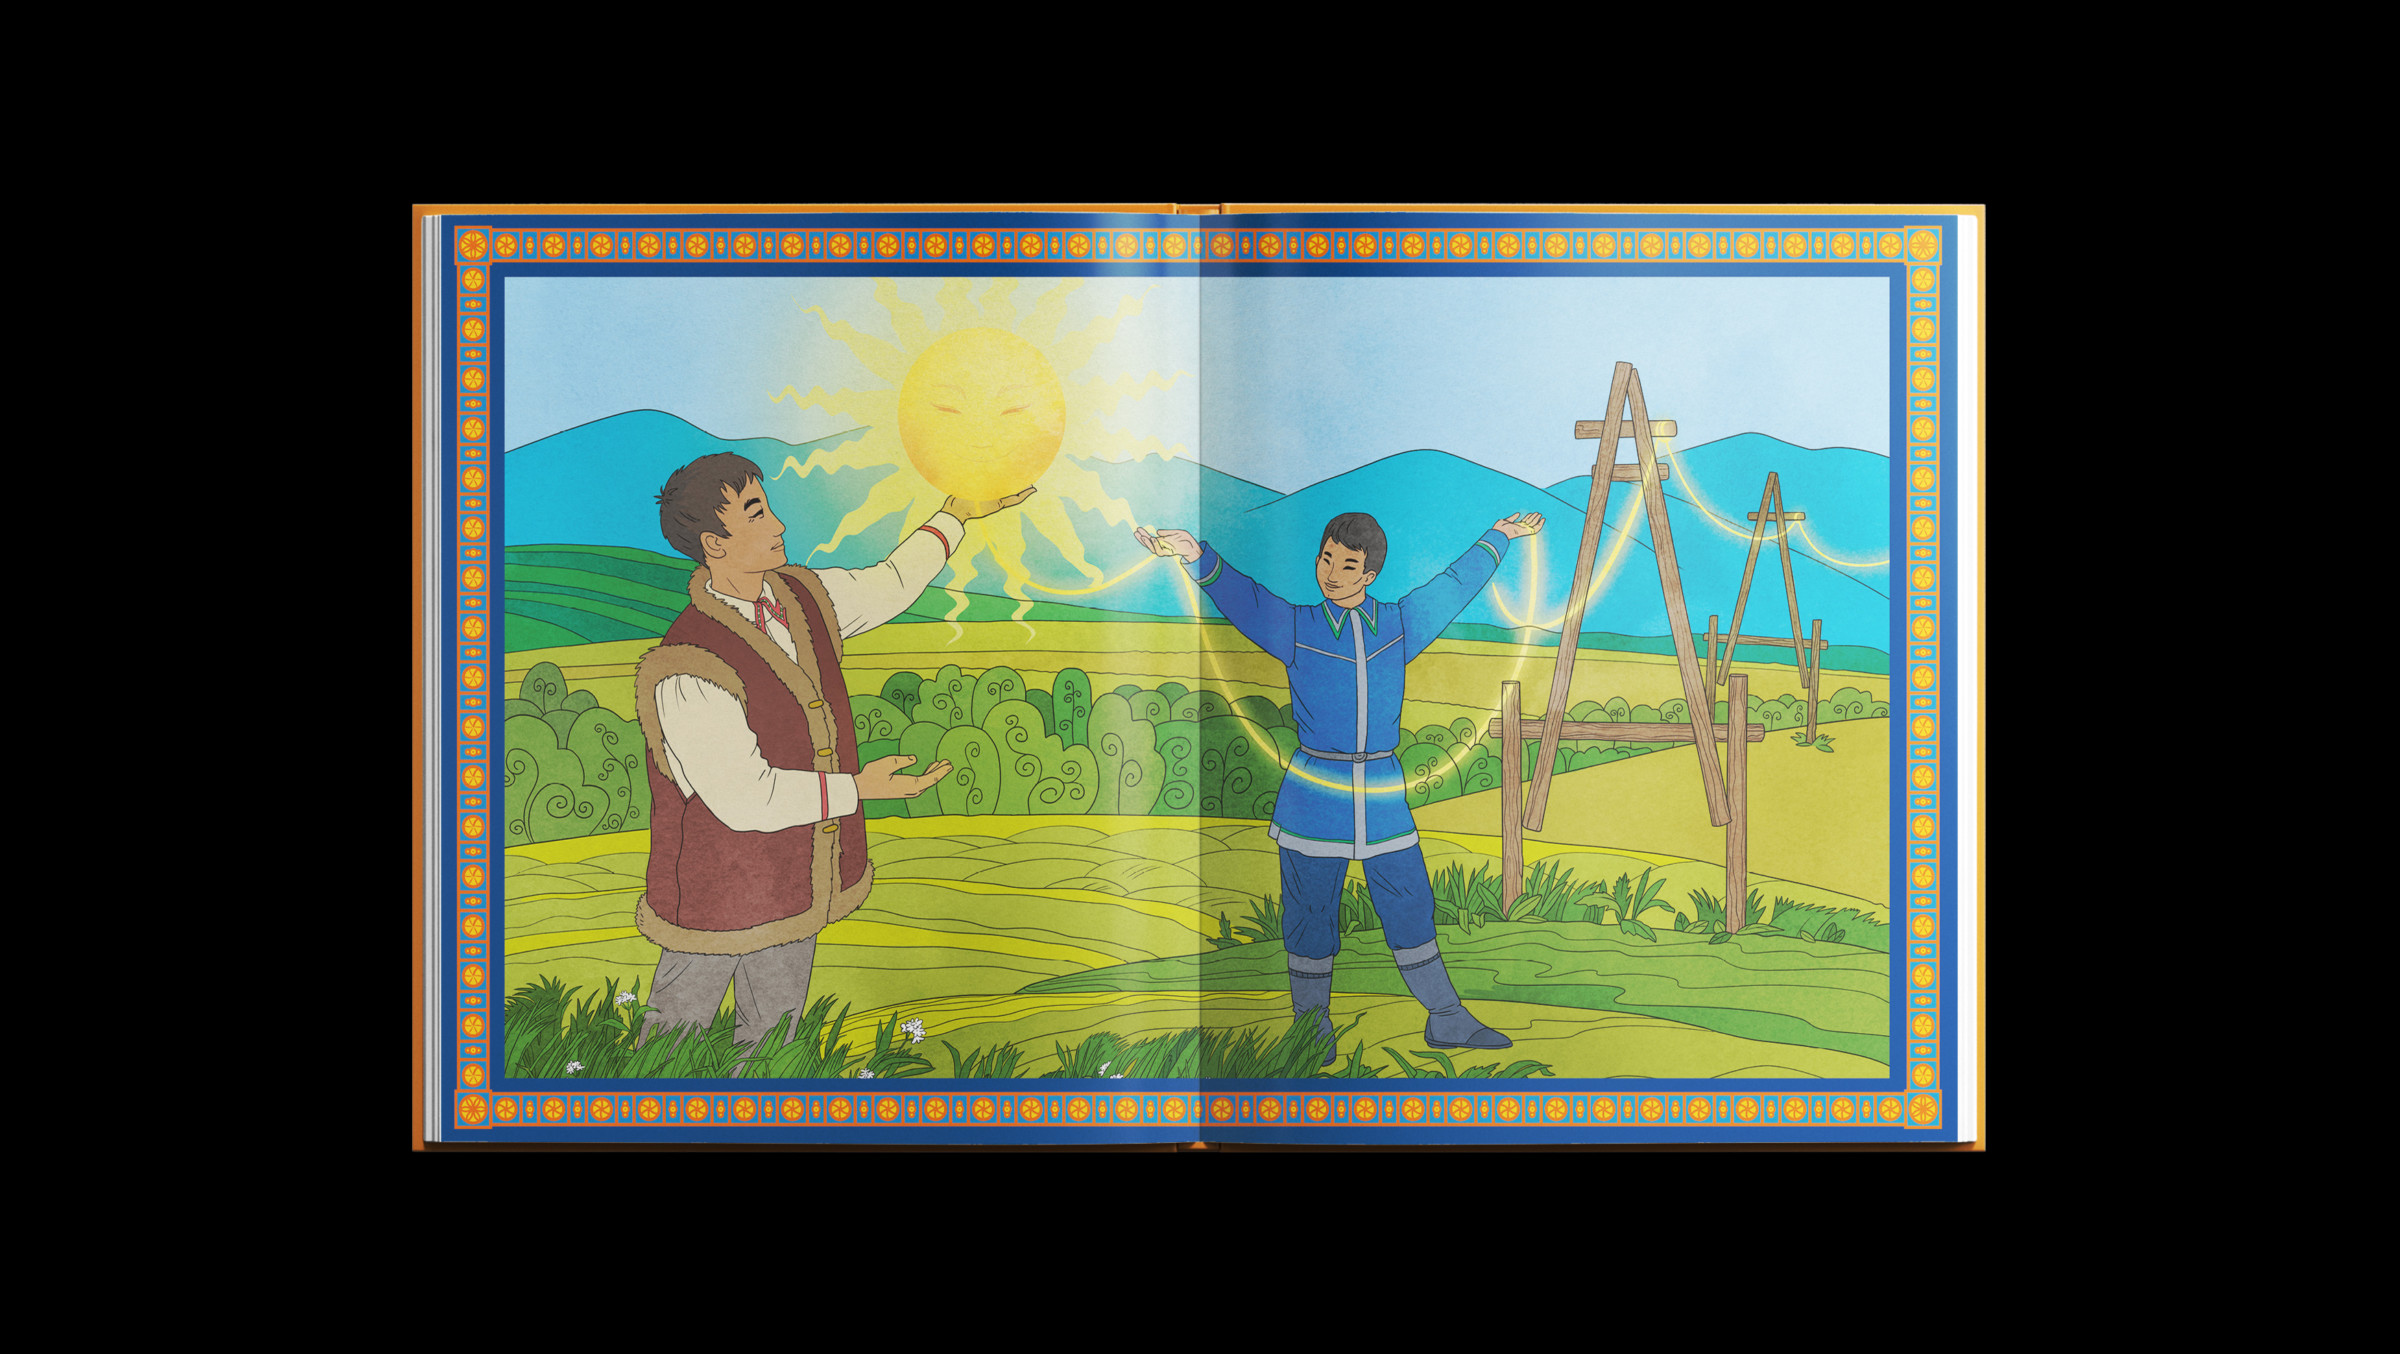 иллюстрация сказки. главные герои сказок, придуманные и нарисованные нашей студией, приносят свет и тепло на холодные якутские просторы иносказательно рассказывая про значение энергетики